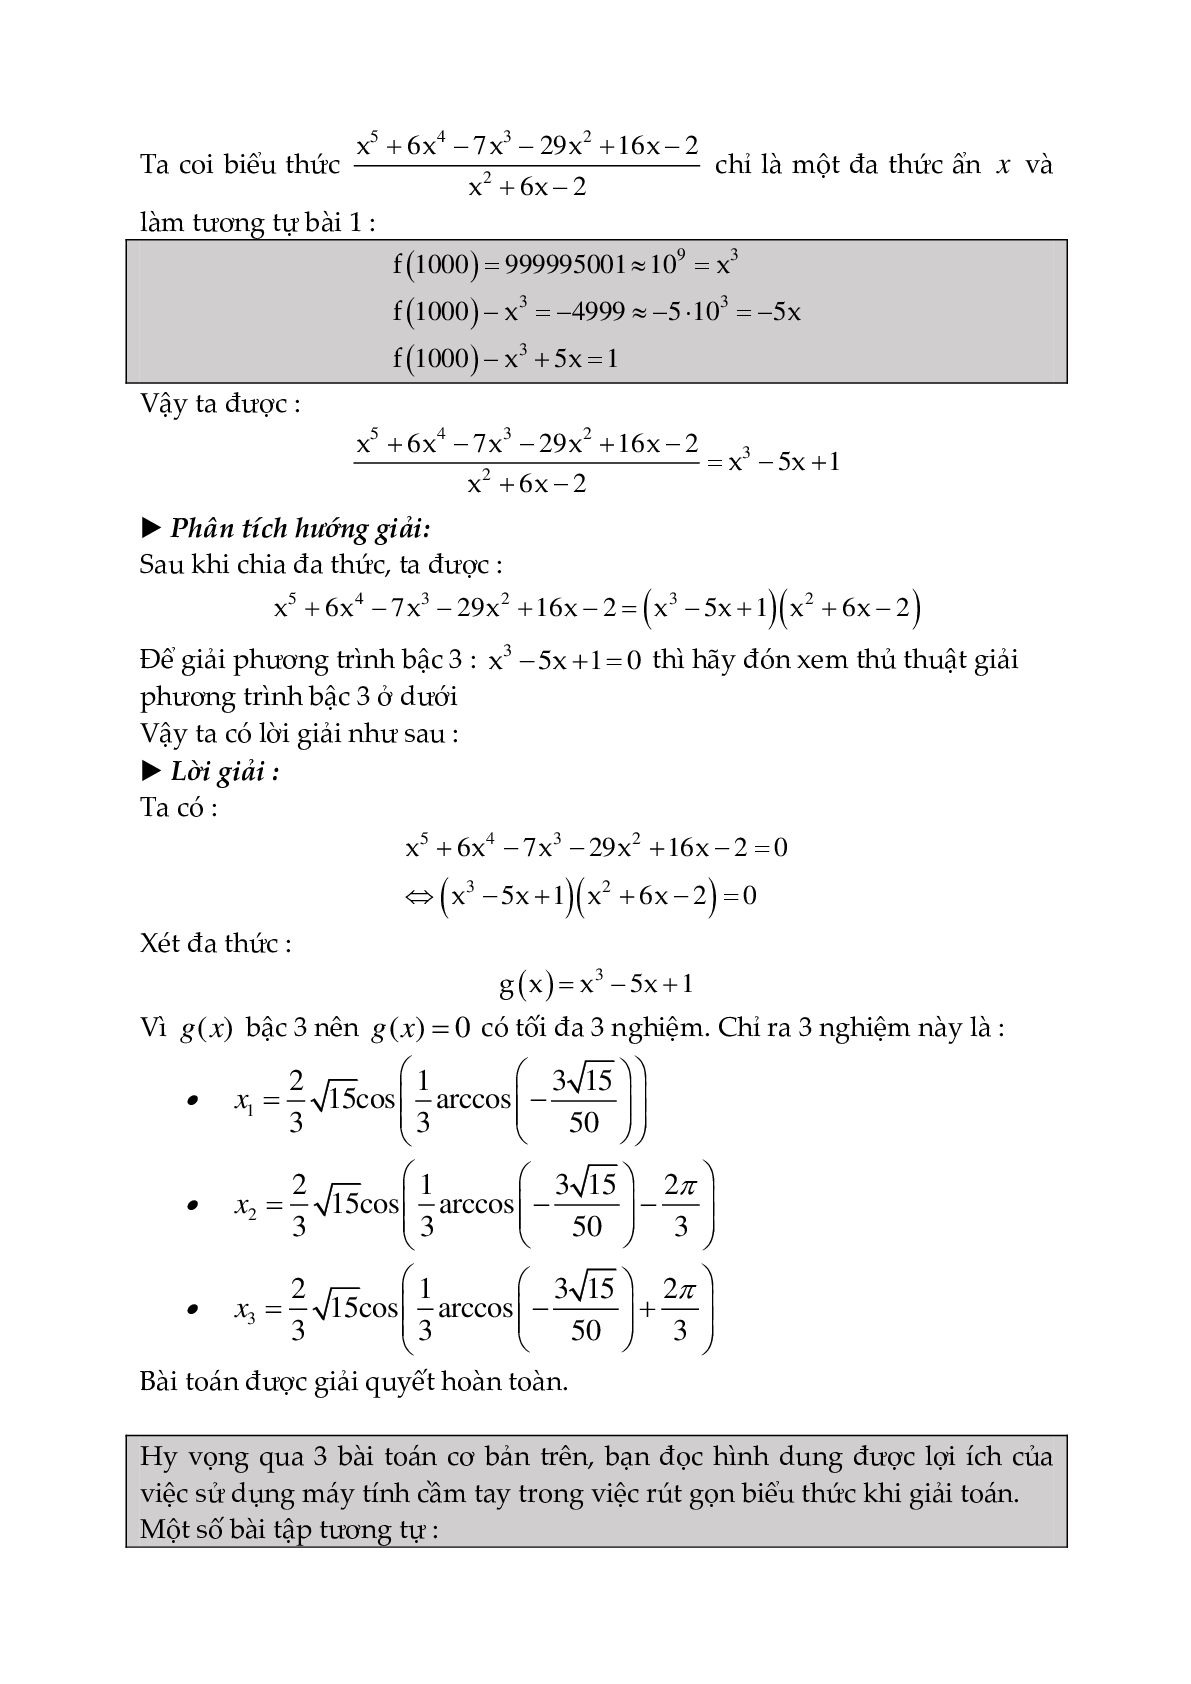 Kĩ năng sử dụng máy tính Casio trong giải toán (trang 8)